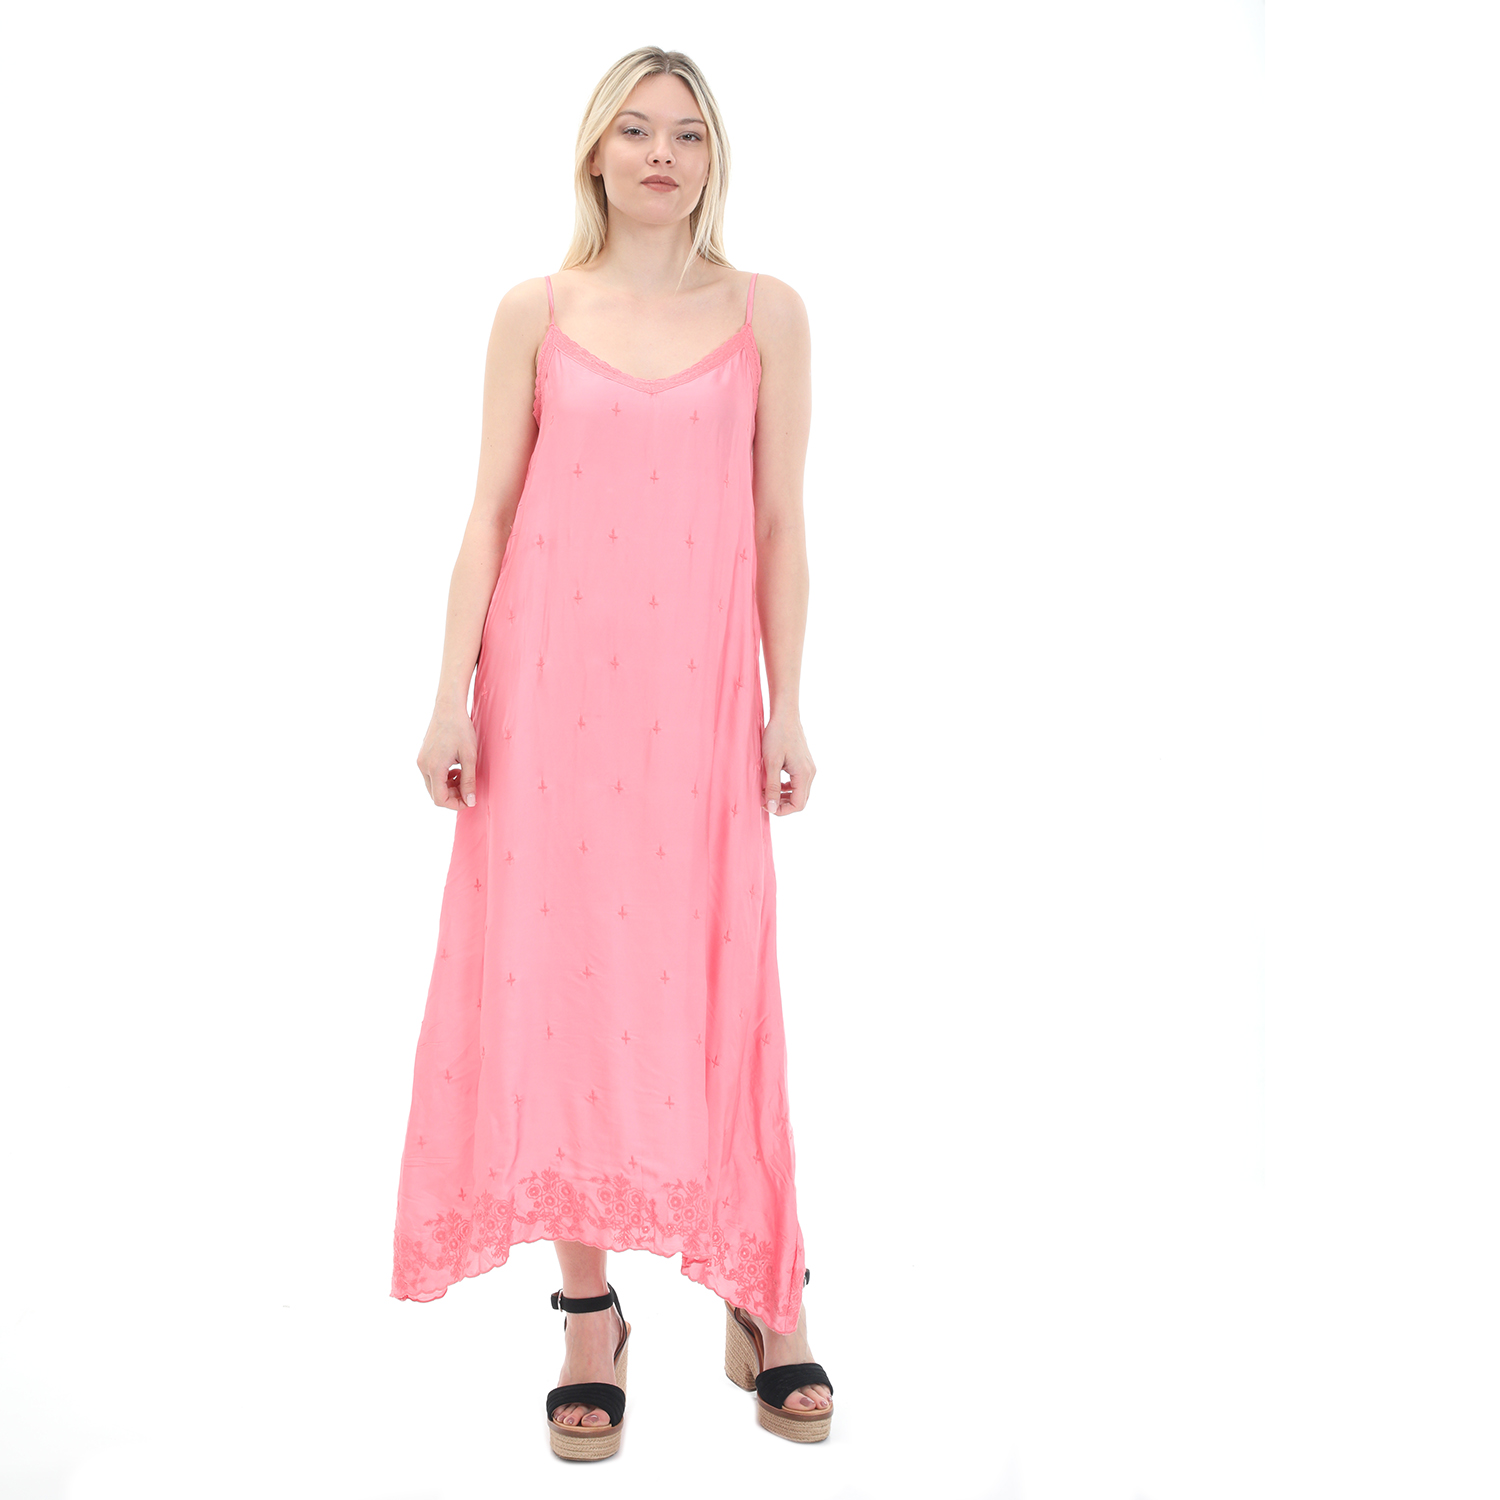 Γυναικεία/Ρούχα/Φορέματα/Μάξι ONESEASON - Γυναικείο maxi φόρεμα ONESEASON ANTOINETTE SLIP DRESS ροζ